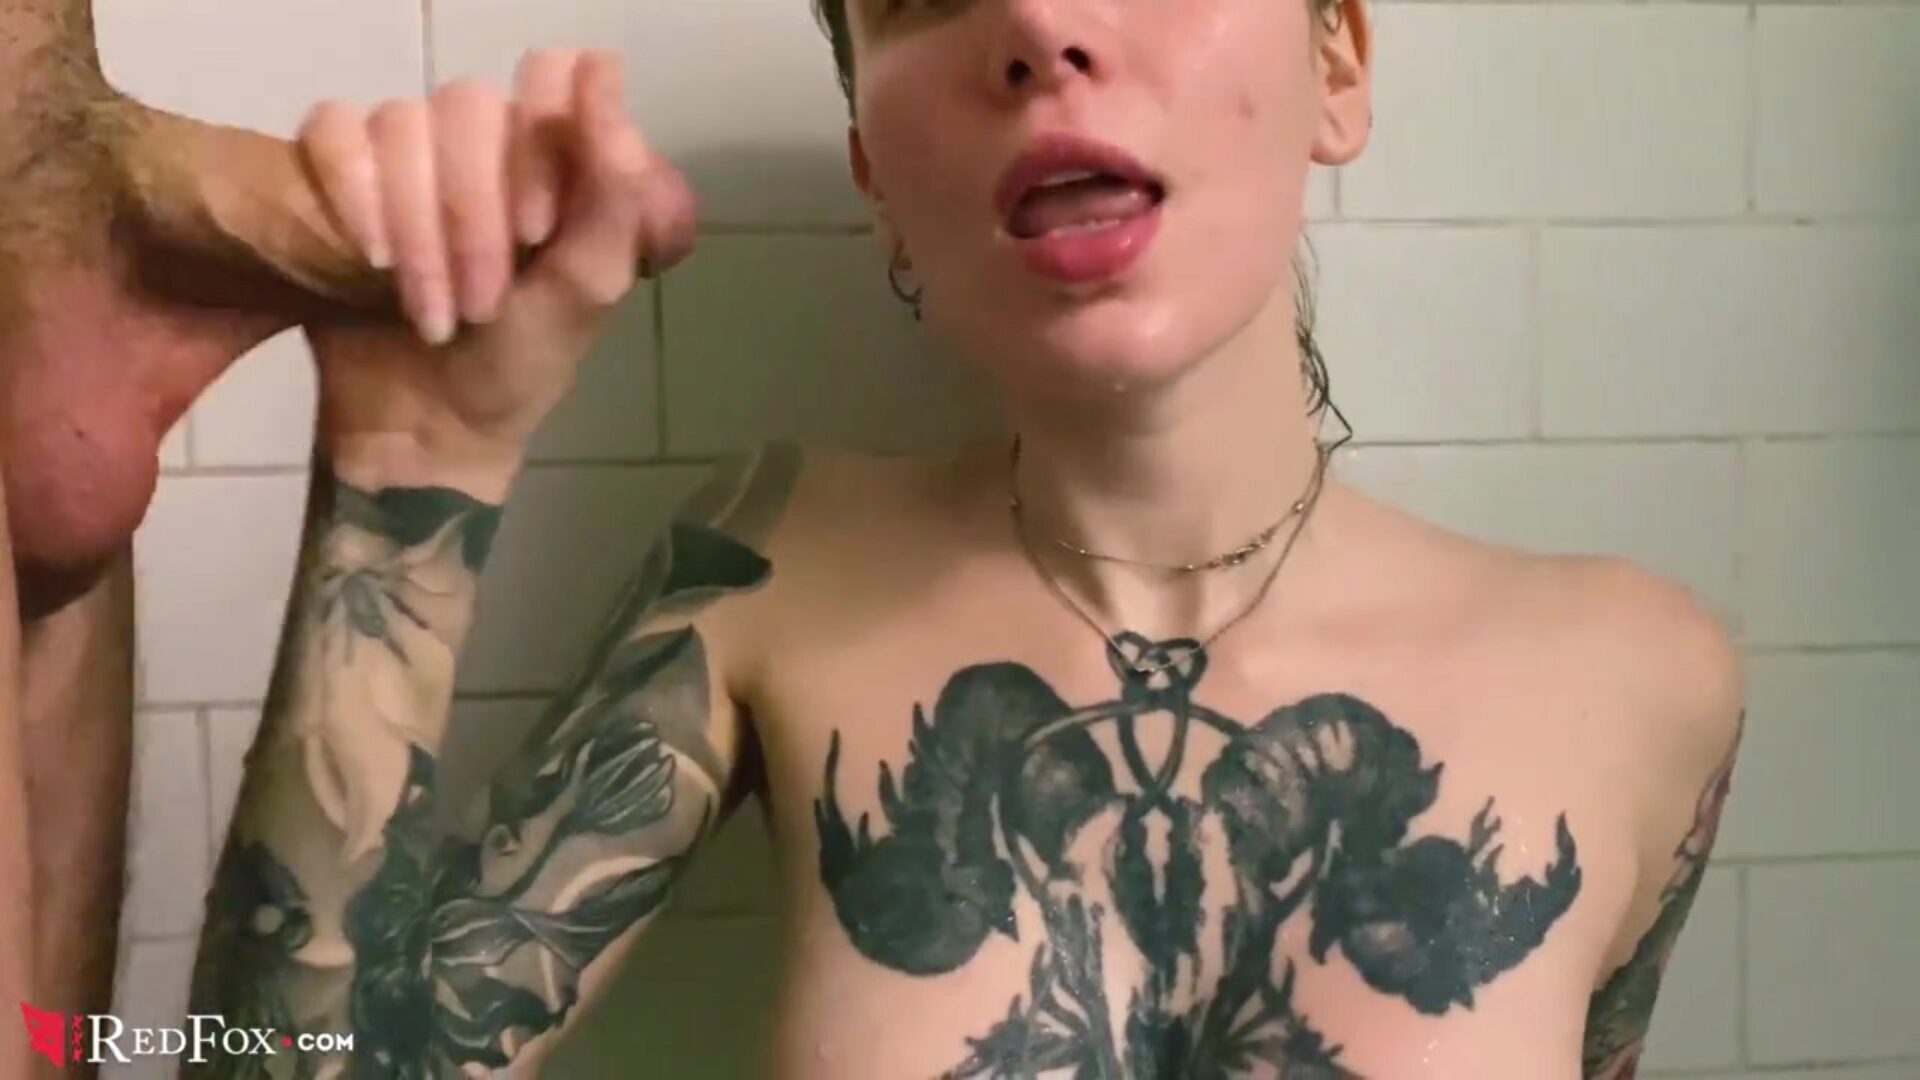 tetovirane bebe pov blowjob i sperma u ustima u kupaonici